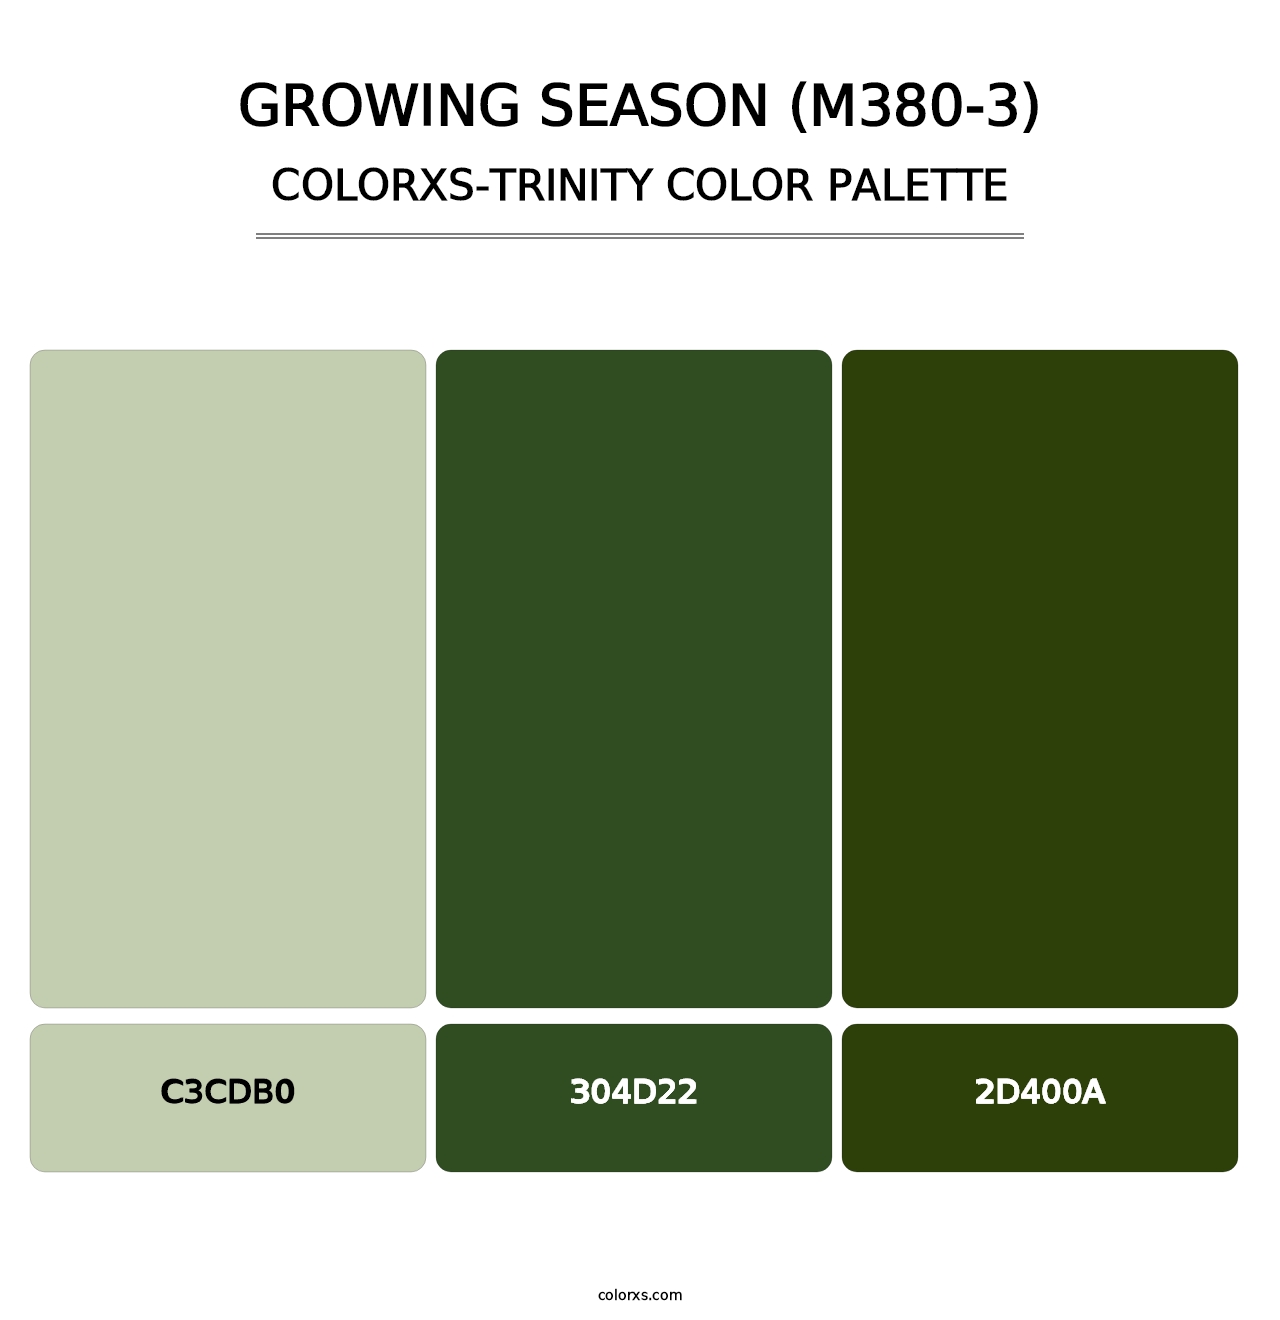 Growing Season (M380-3) - Colorxs Trinity Palette